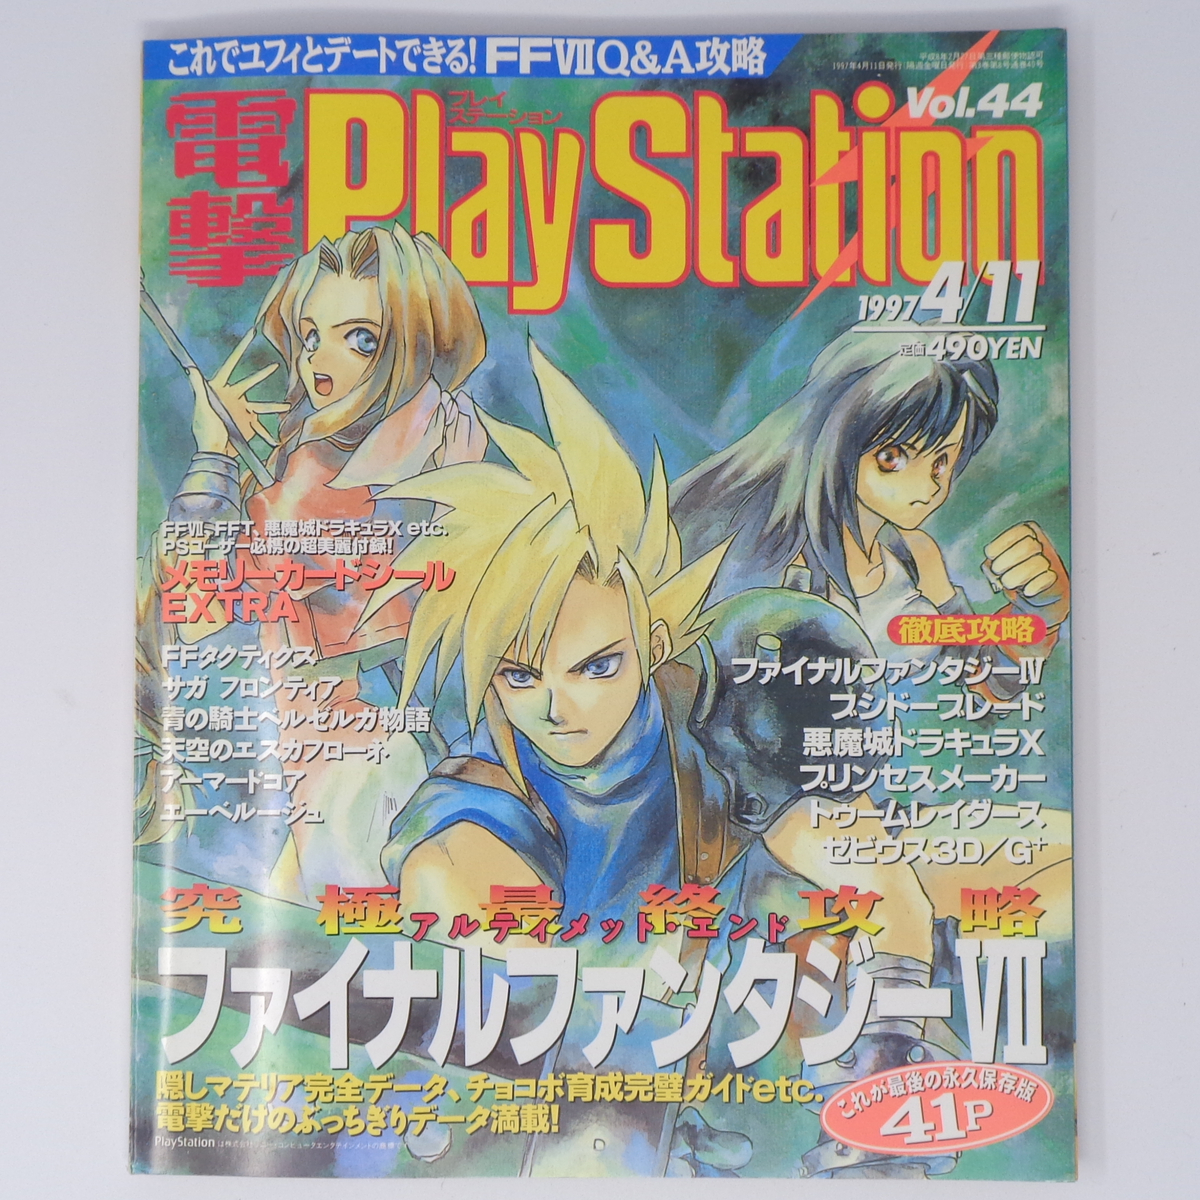 電撃PlayStation 1997年4月11日号Vol.44 付録メモリーカードシール未使用/FF7/電撃プレイステーション/ゲーム雑誌[Free Shipping]の画像1